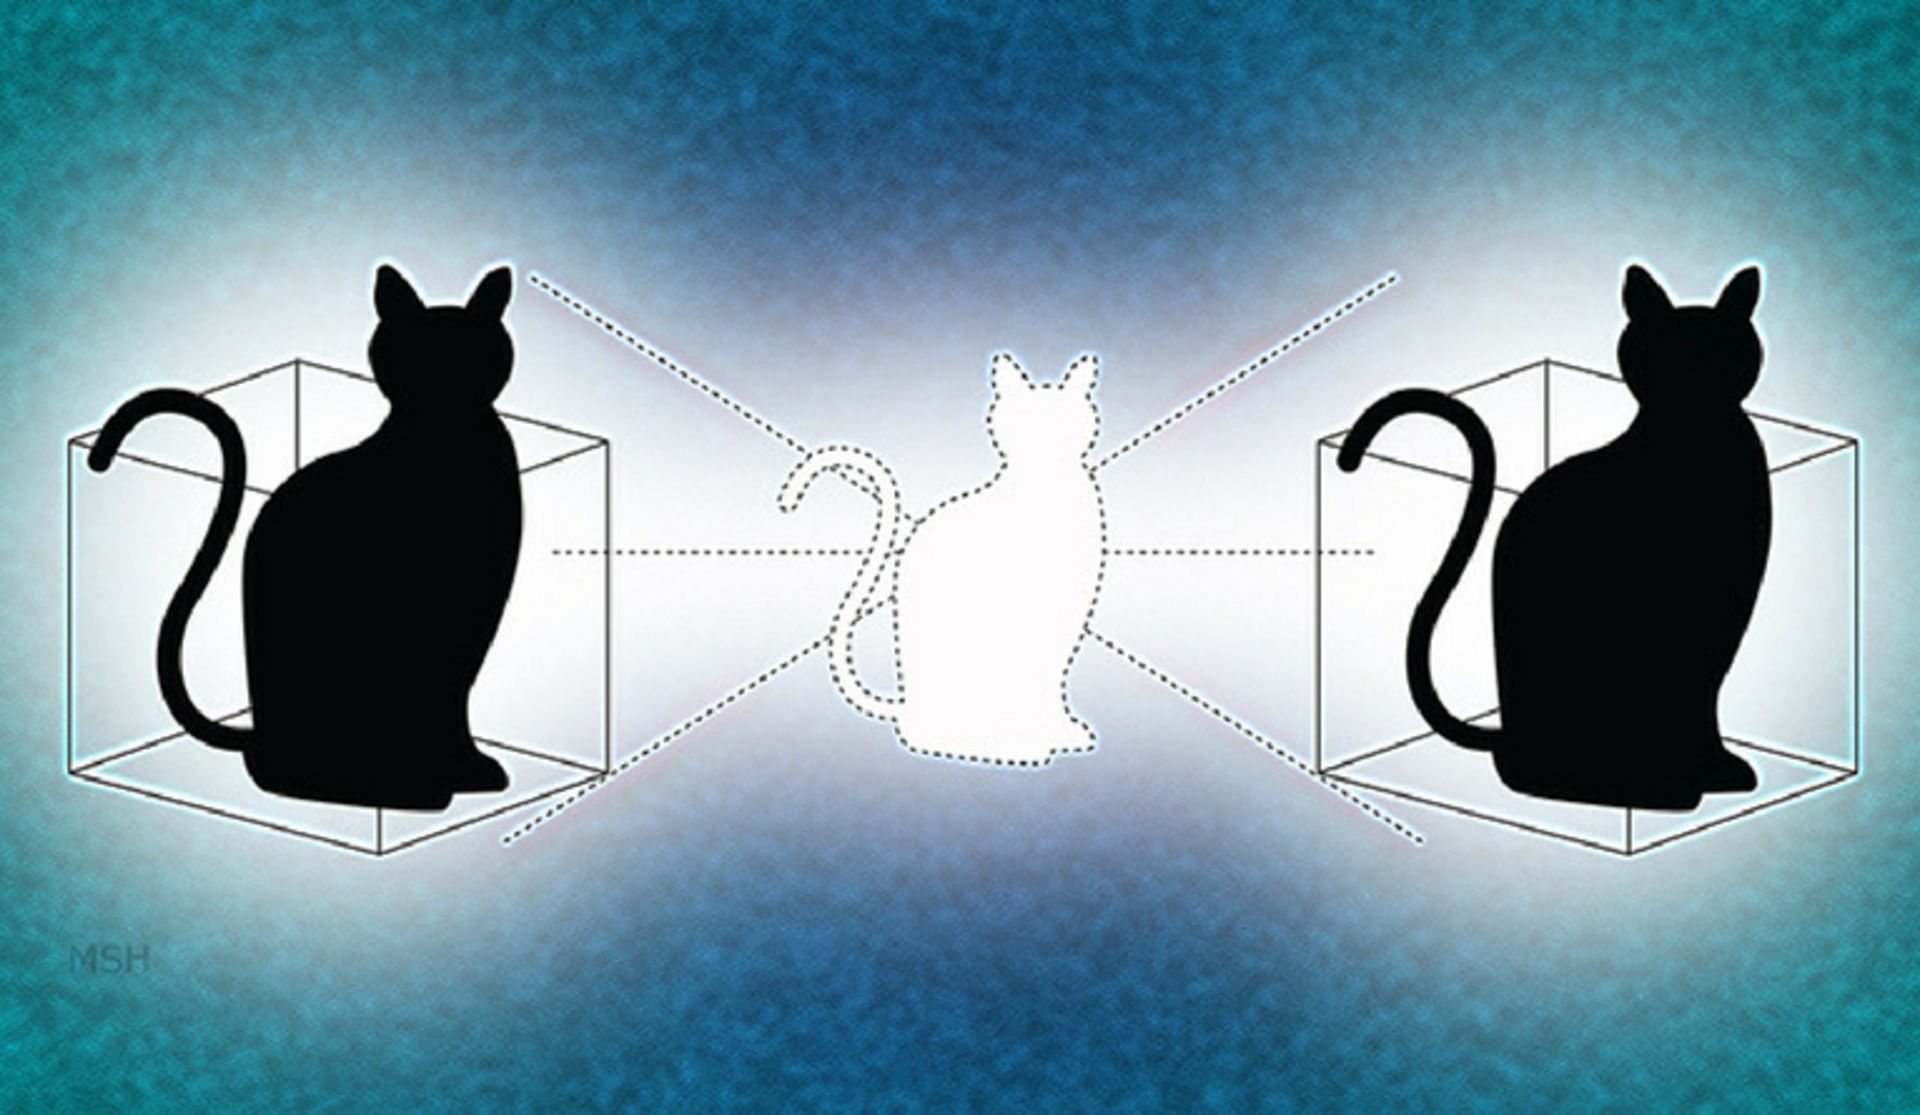 مرجع متخصصين ايران مفهومي از گربه شرودينگر